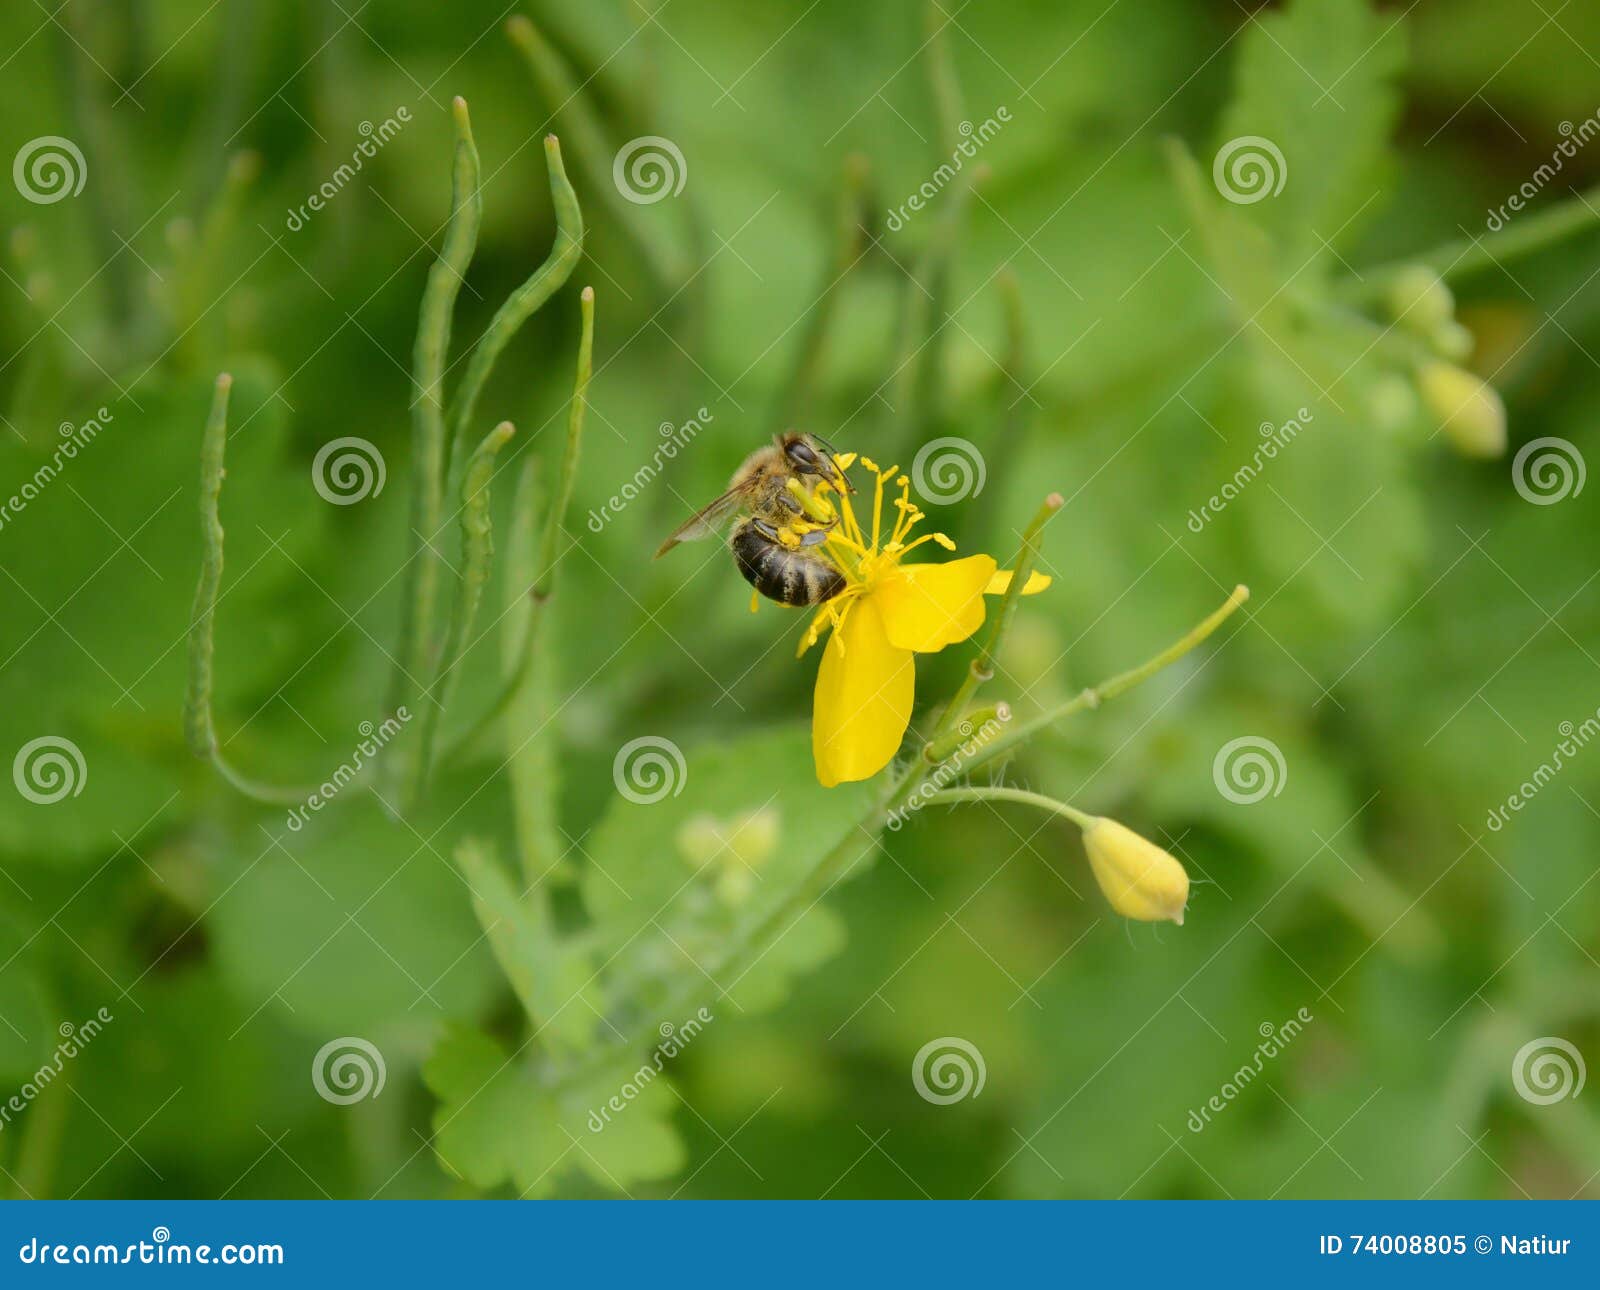 吃从白屈菜的蜂蜜蜂花蜜. 享受可口饭食的蜂蜜蜂(Apis mellifera)，当收集花蜜从白屈菜(白屈莱属majus)时开花